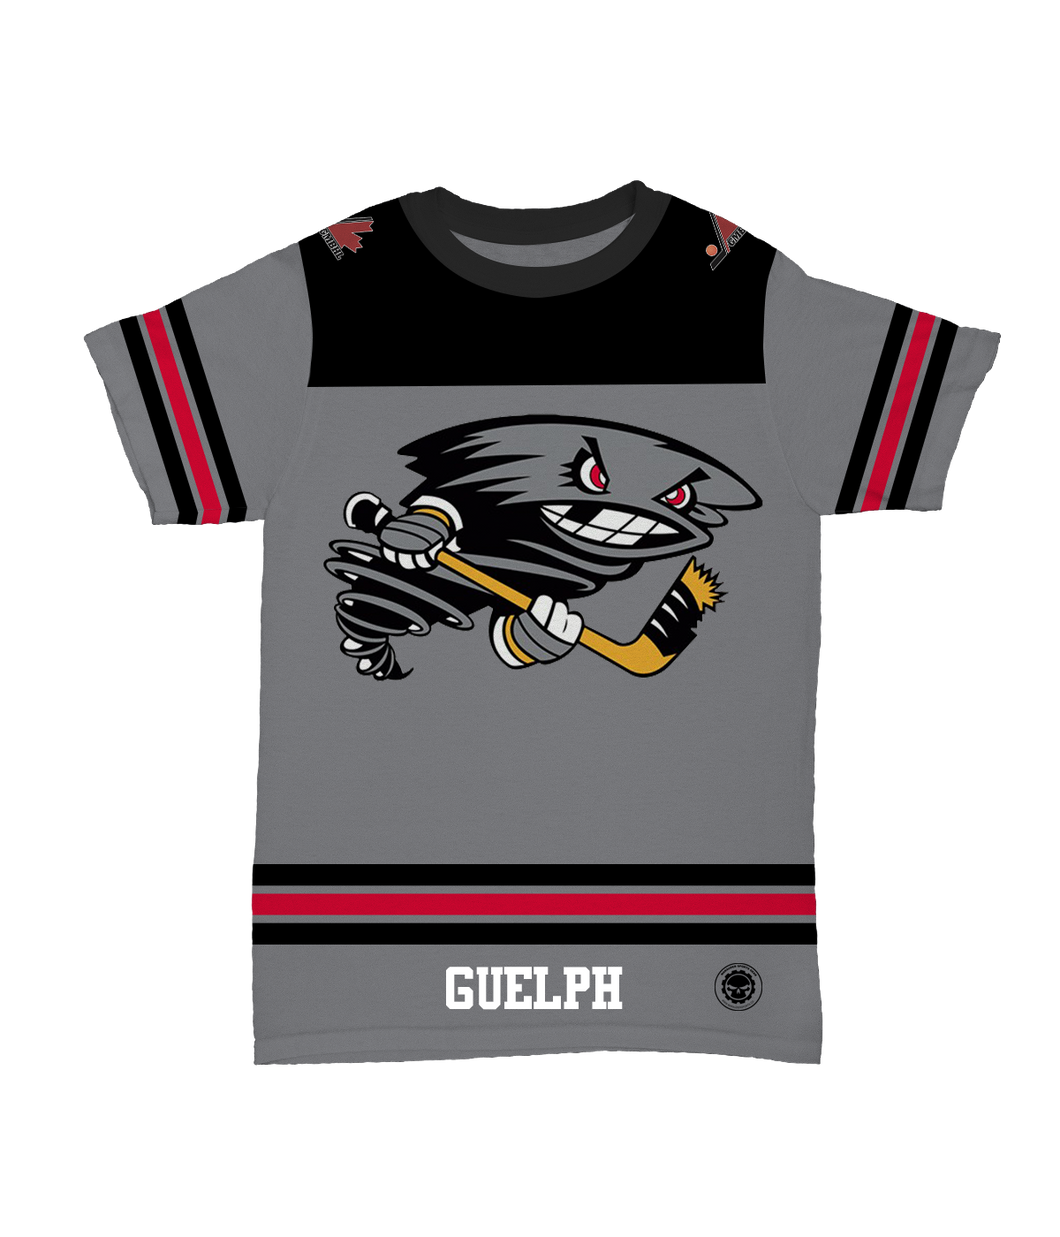 Guelph Shirt